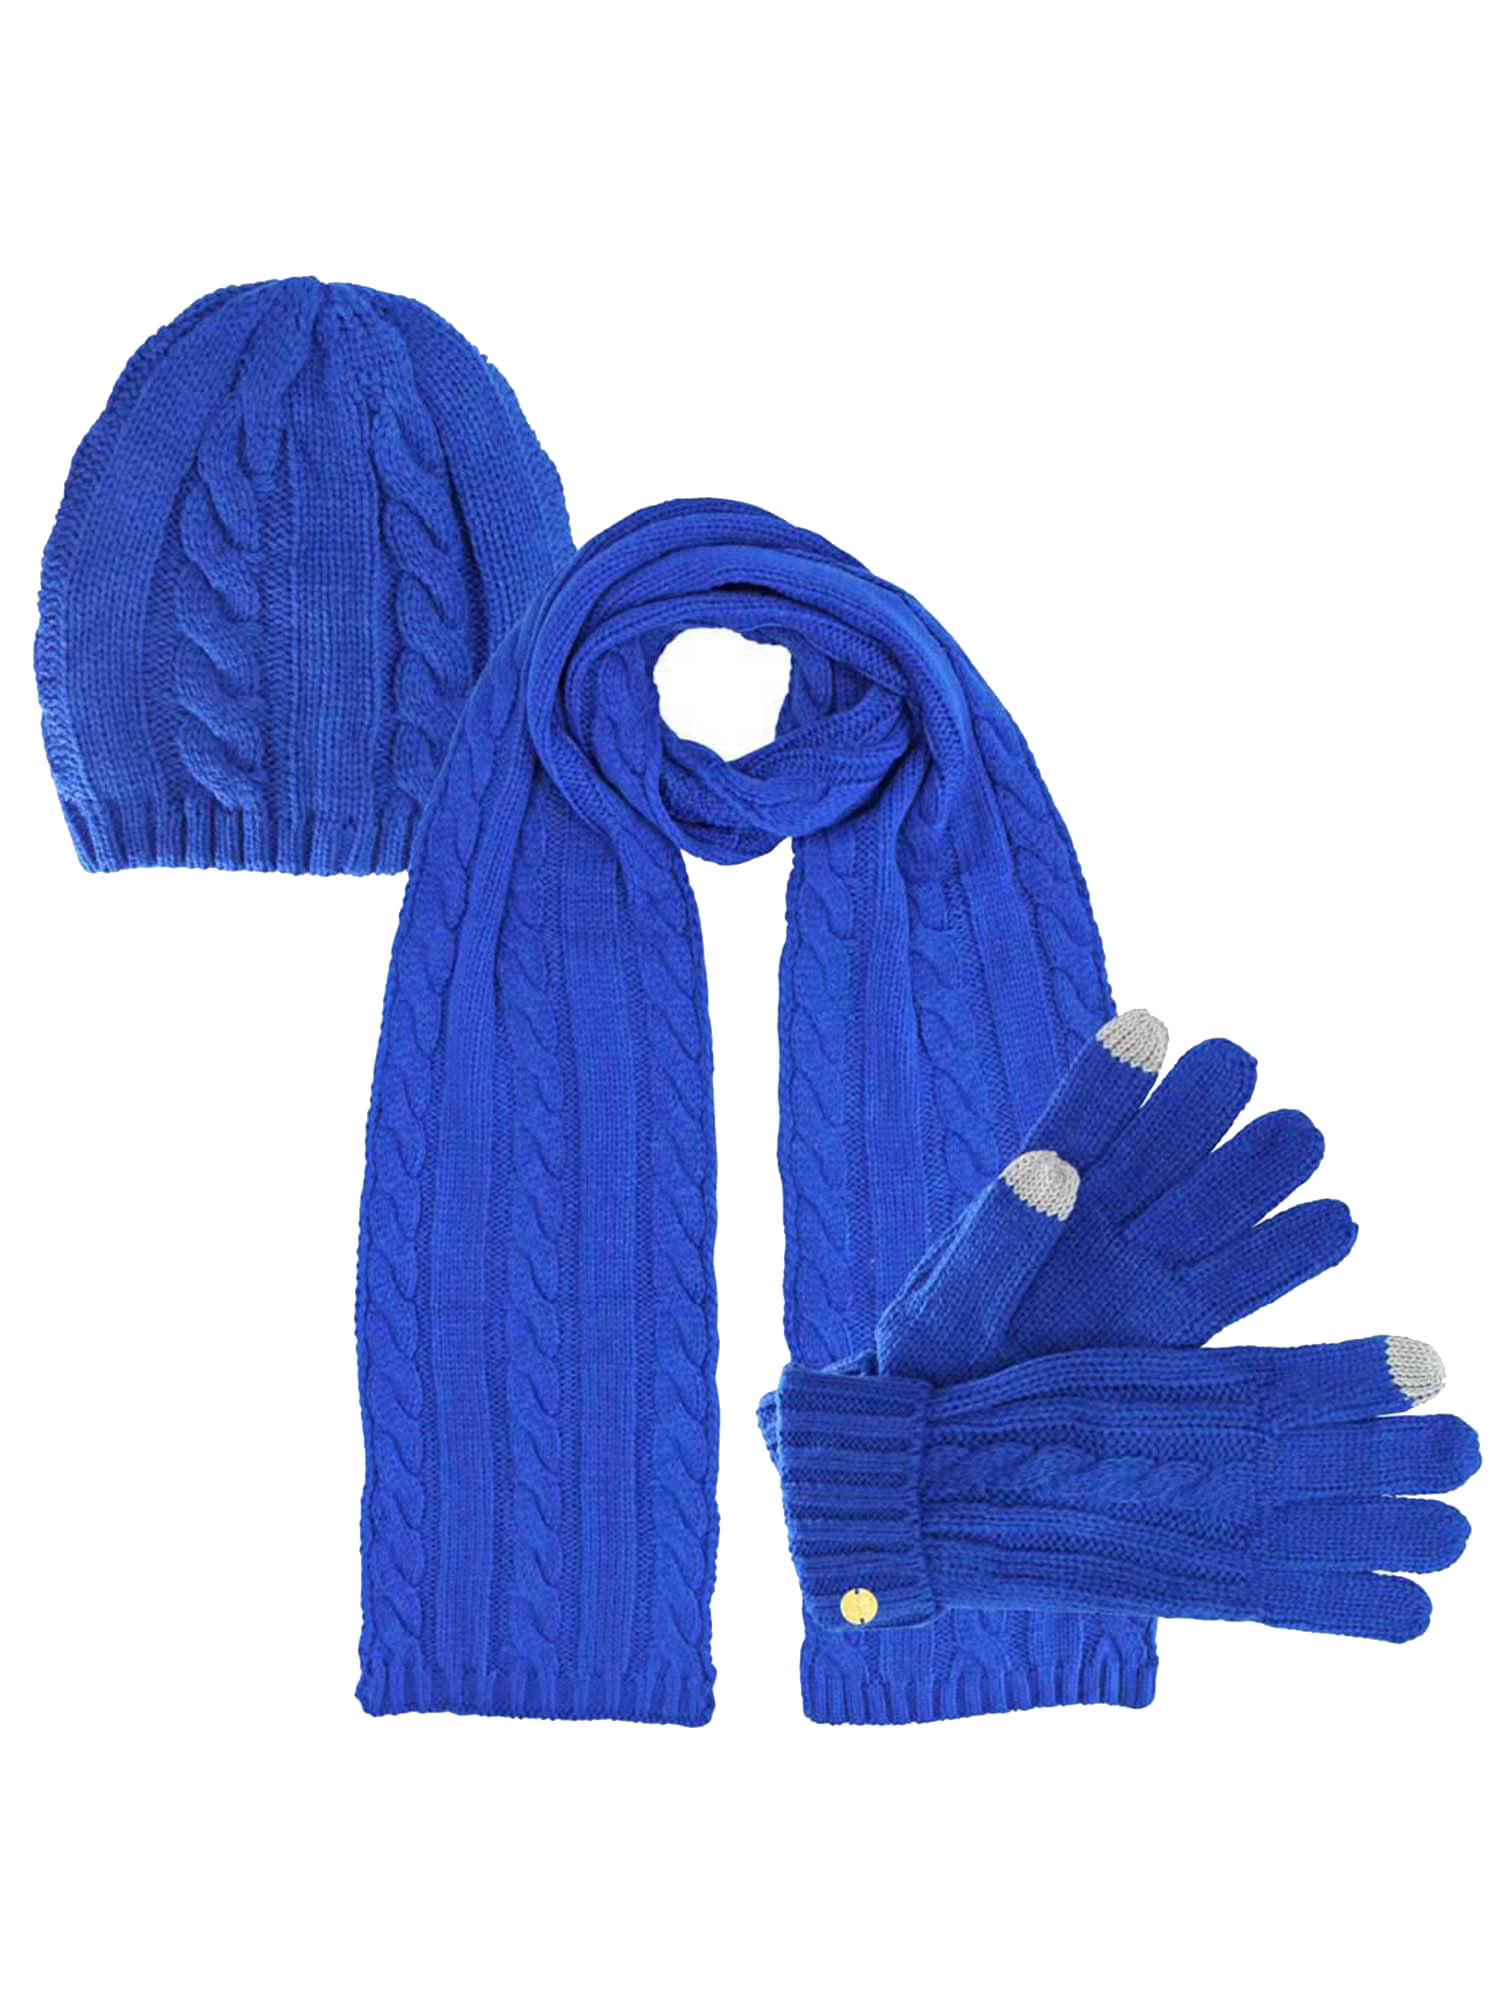 Hats, Scarves & Gloves Sets in Hats, Gloves & Scarves 